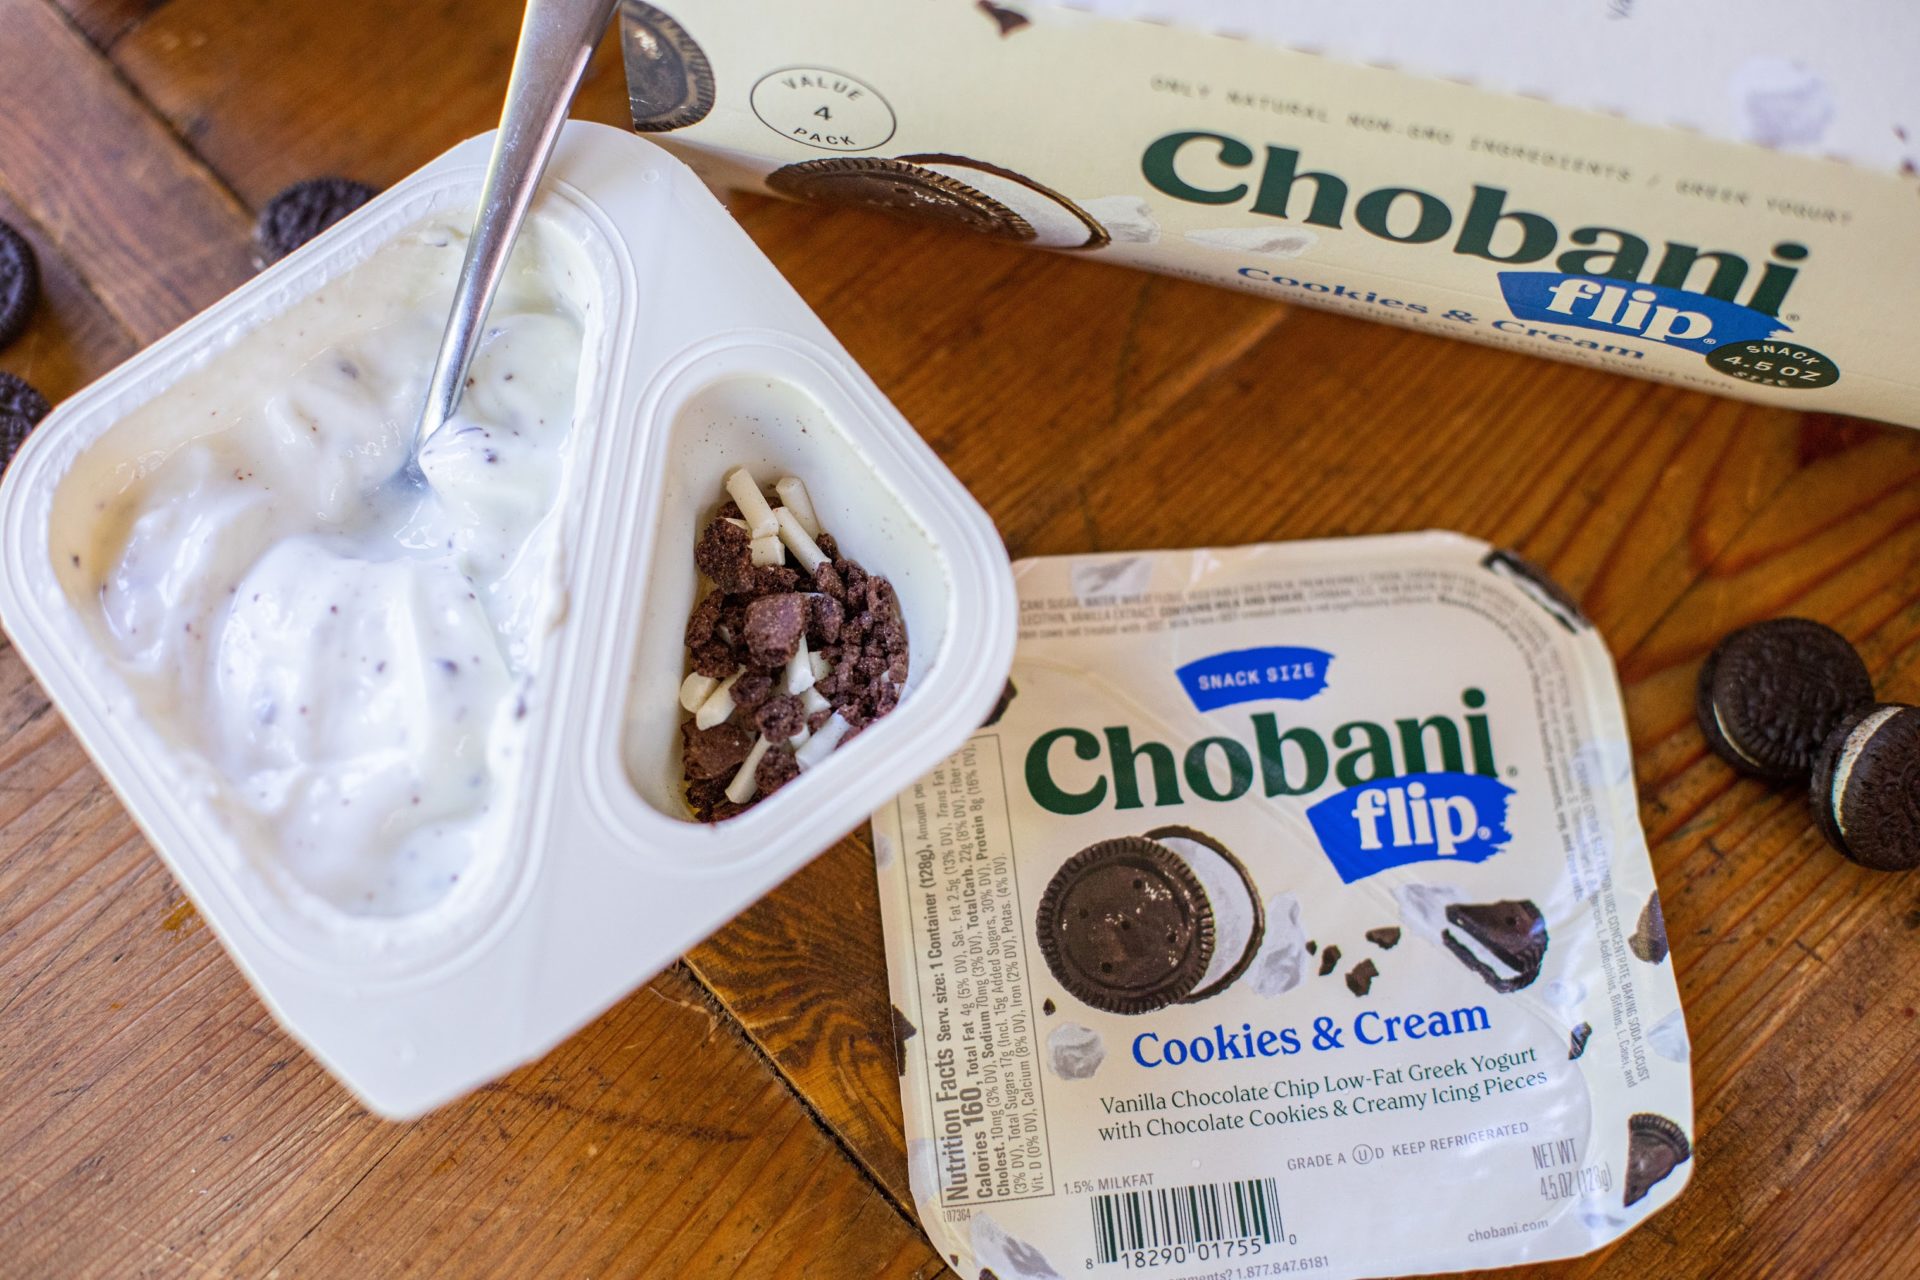 Chobani Flip Yogurt As Low As 39¢ At Kroger